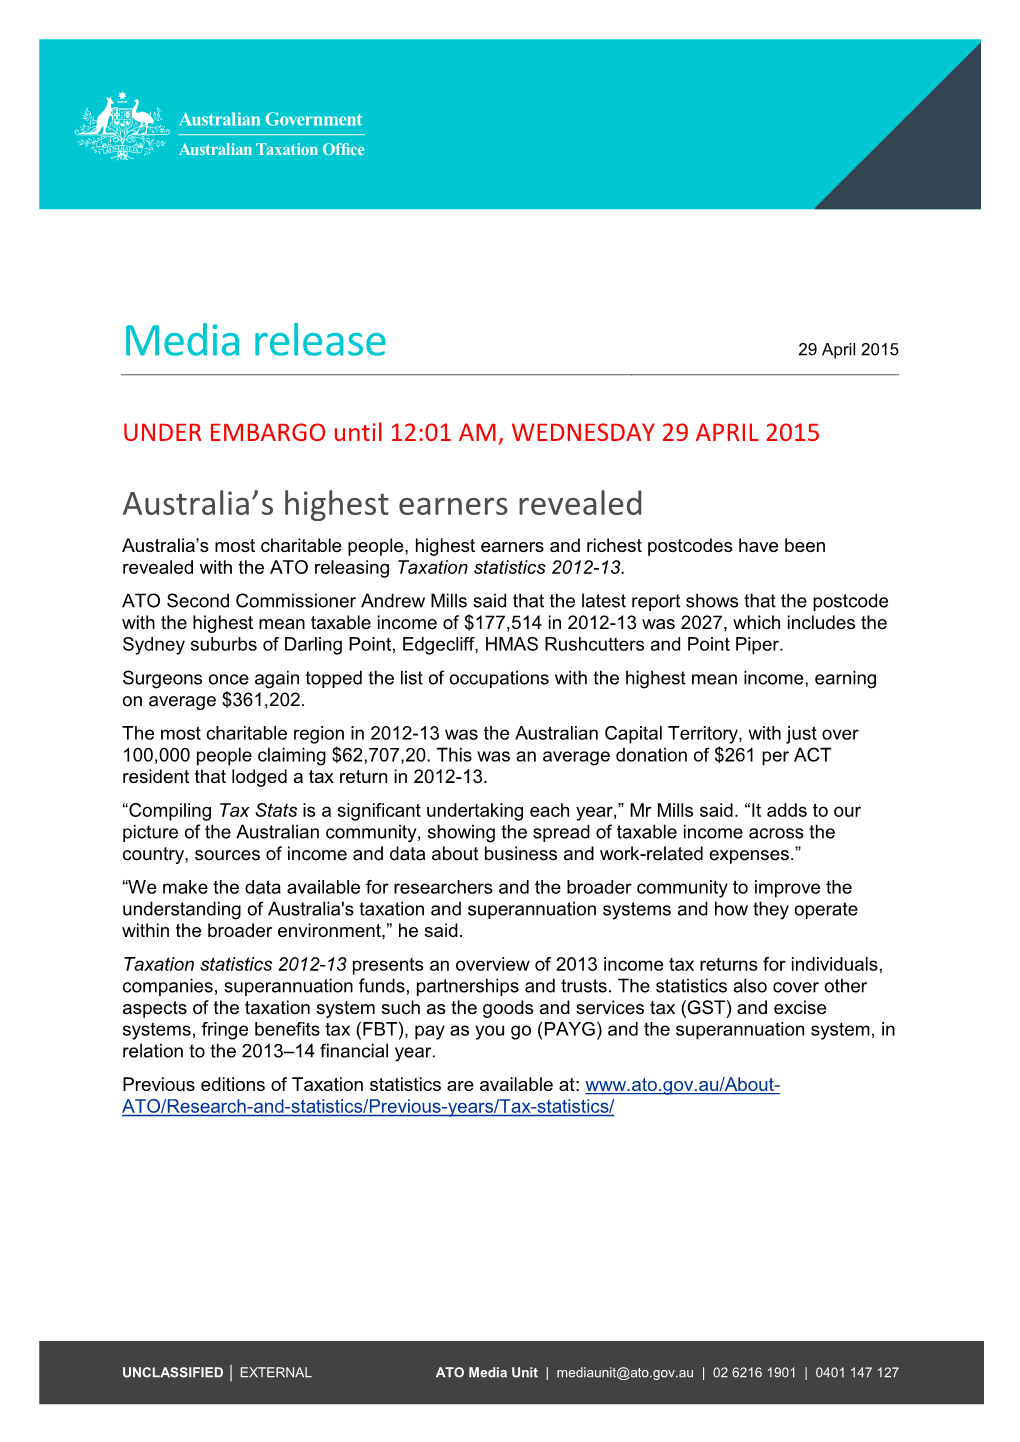 Media Release 29 April 2015